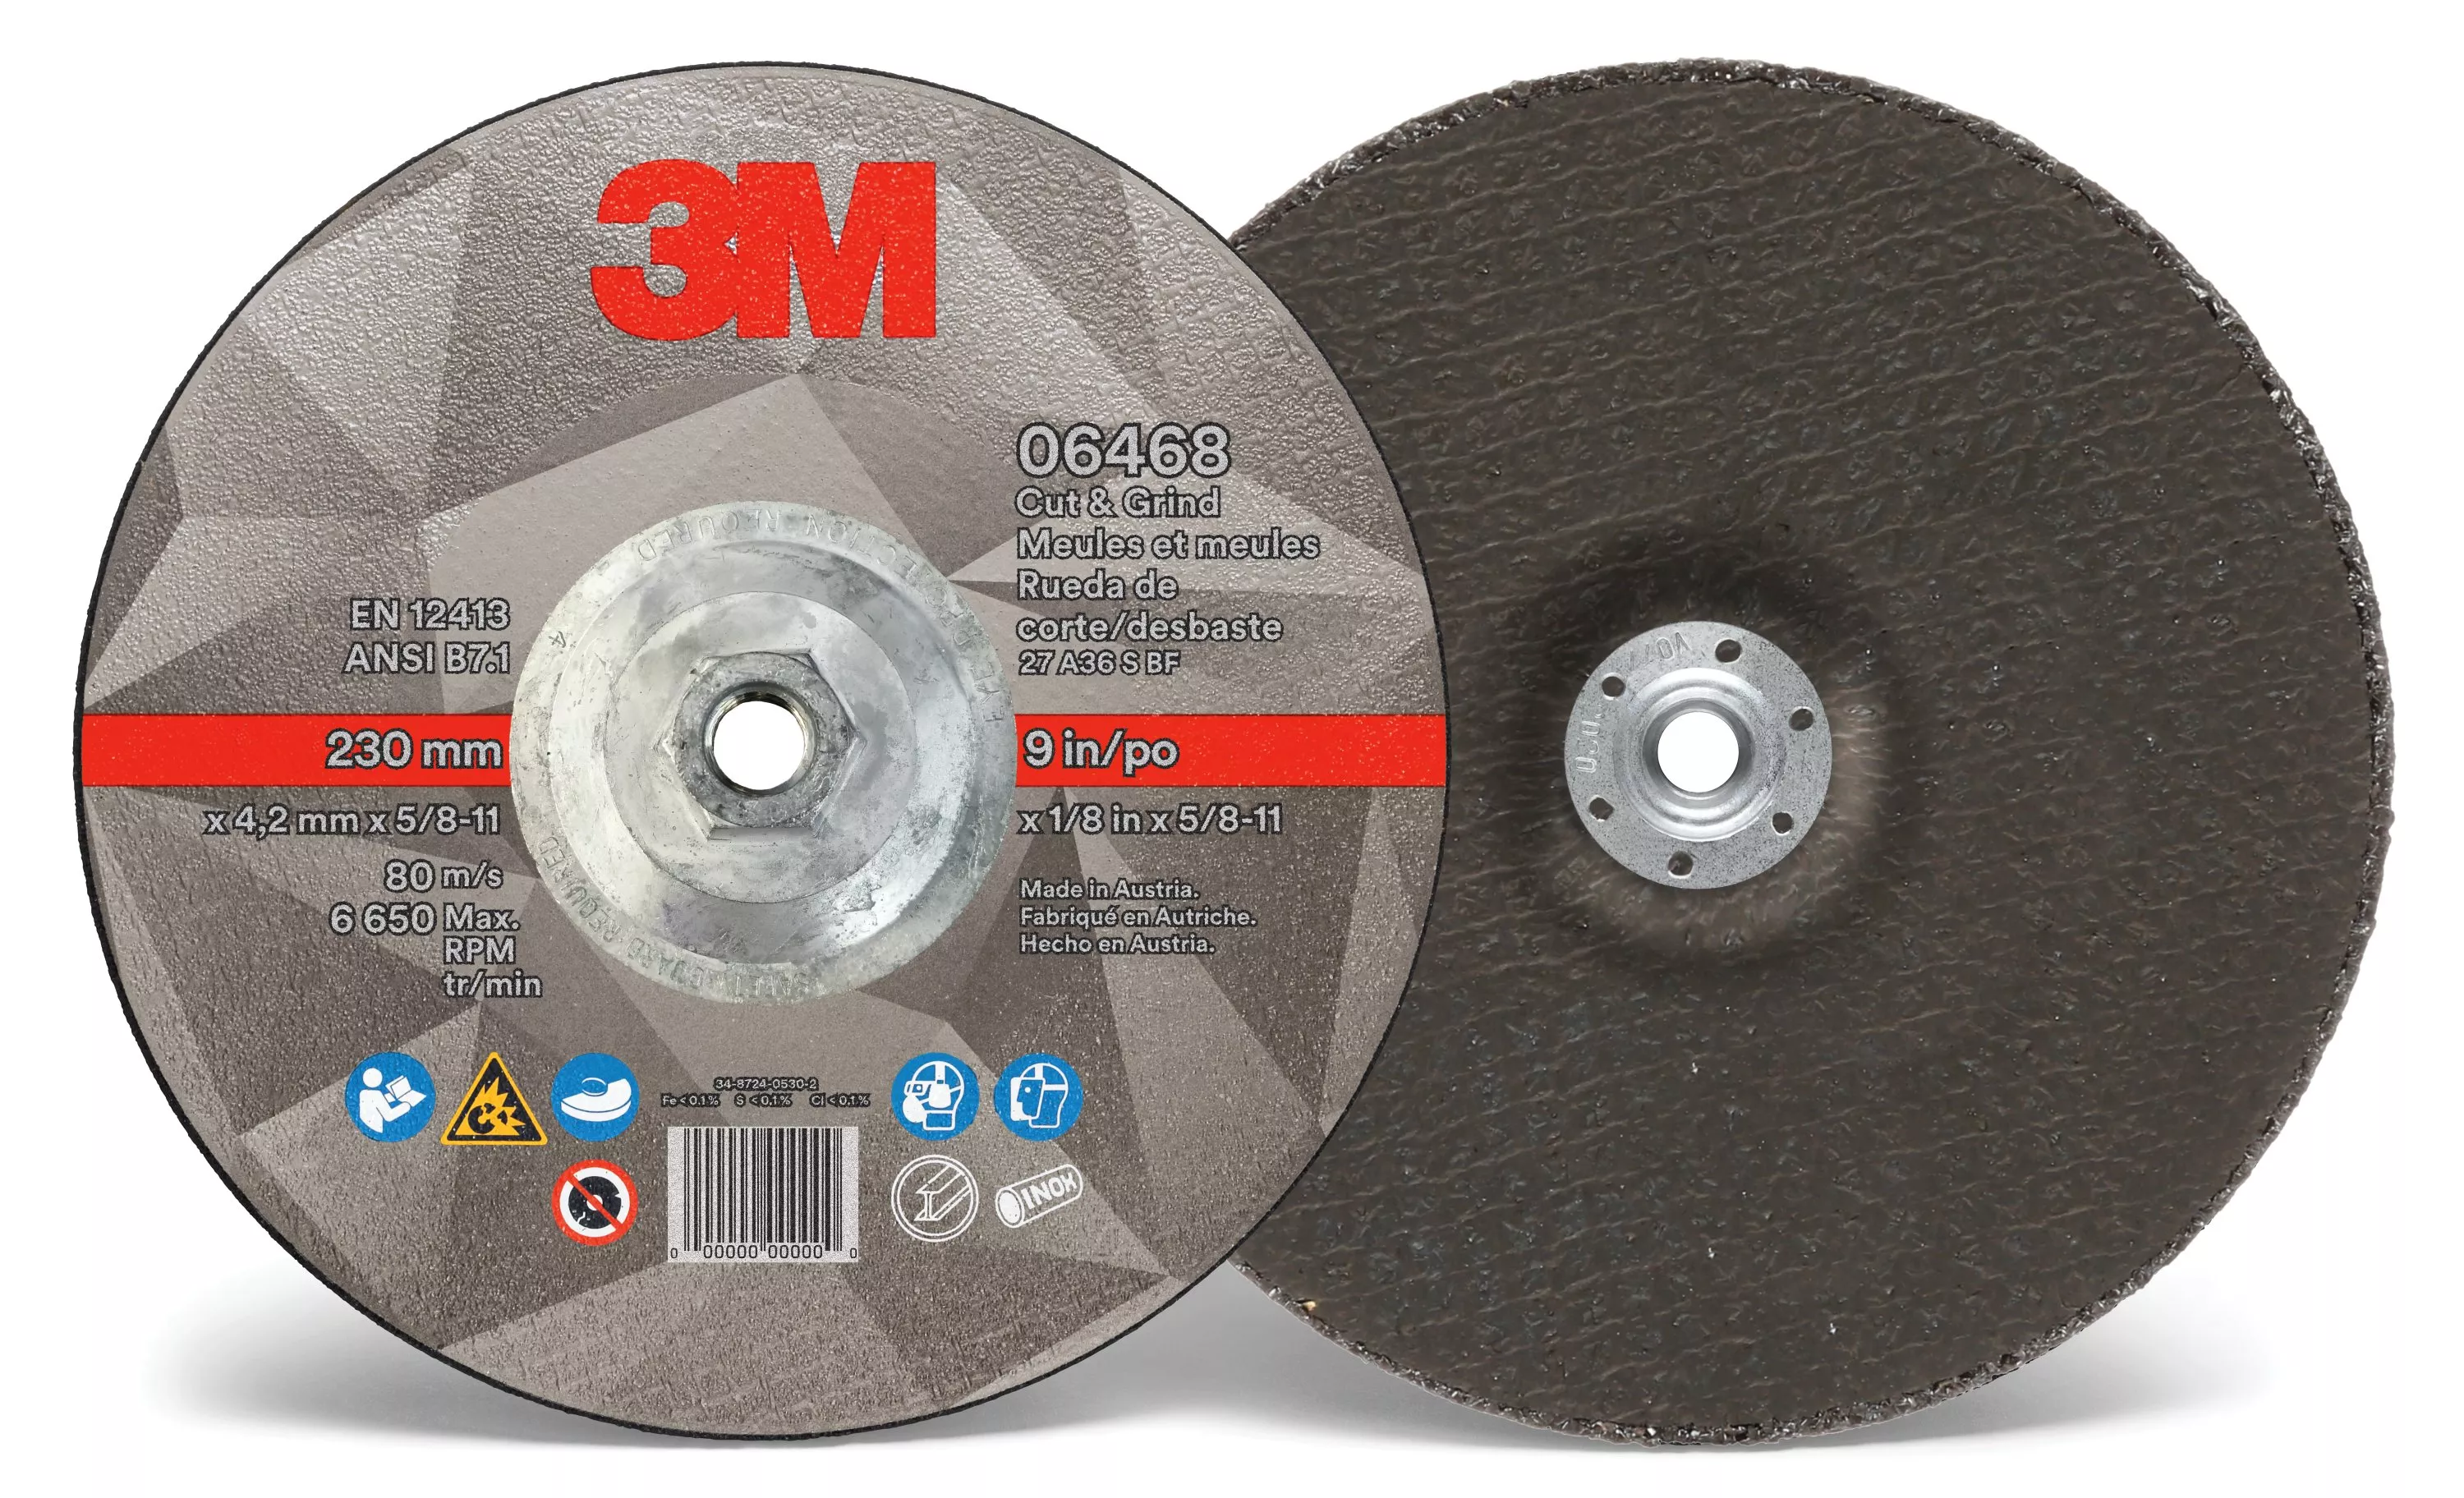 SKU 7100218043 | 3M™ Cut & Grind Wheel